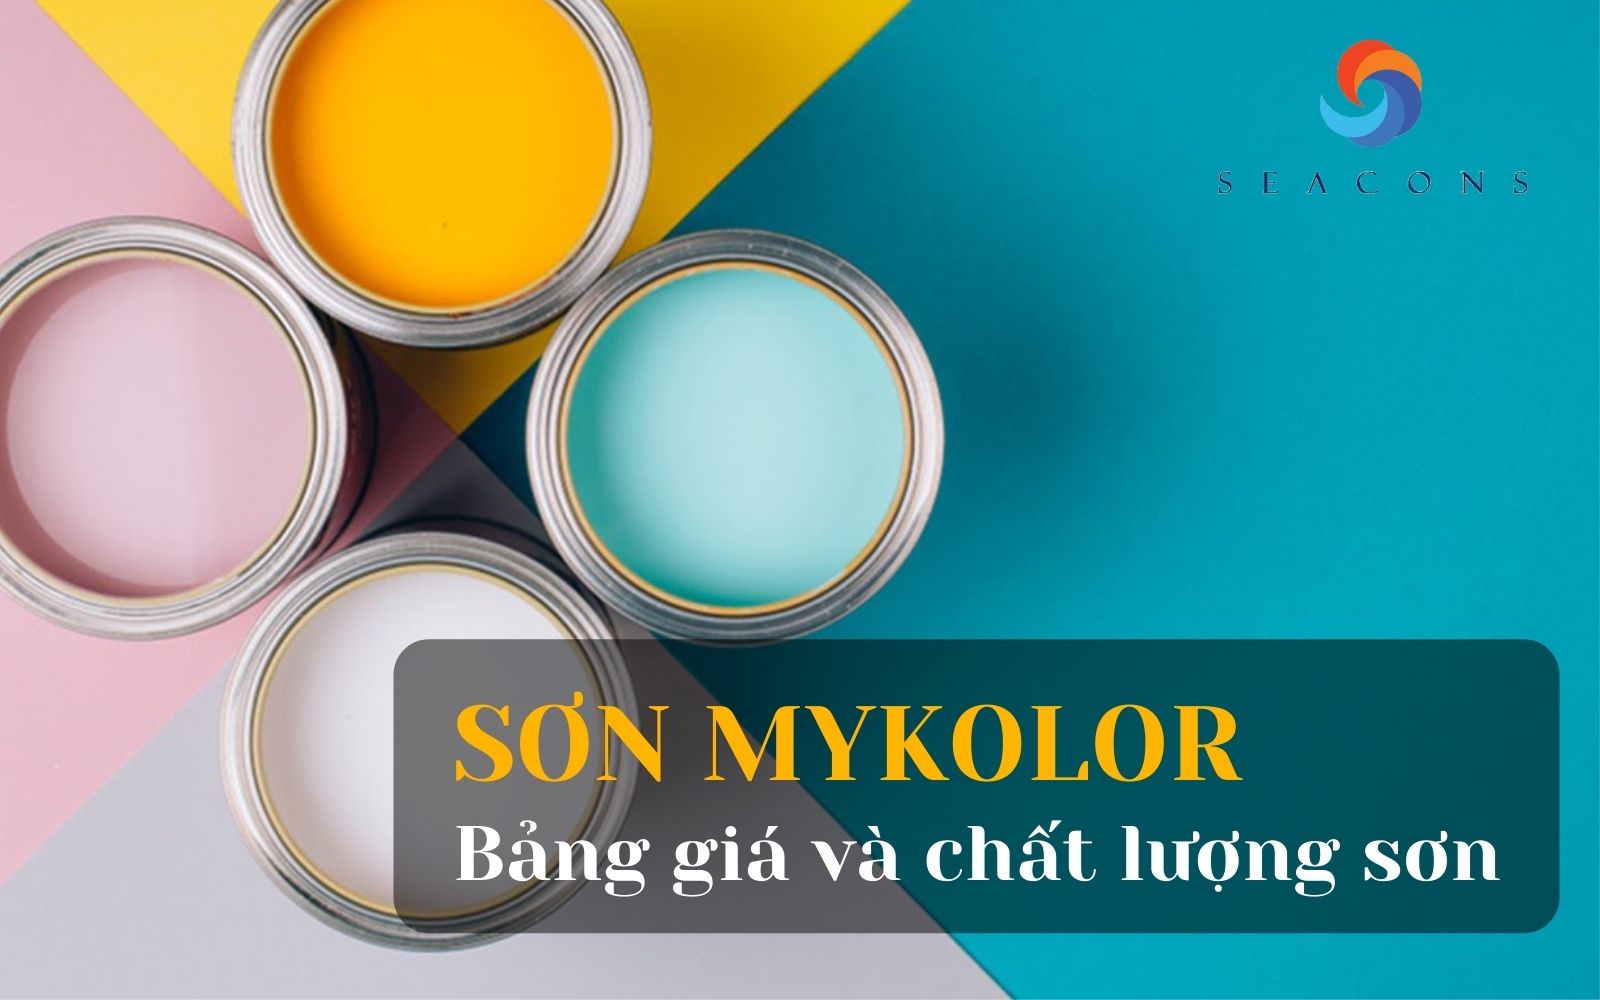 Hãy tham khảo bảng giá sơn Mykolor trước khi chọn loại sơn phù hợp cho ngôi nhà của bạn. Bảng giá chi tiết sẽ giúp bạn có quyết định đúng đắn nhất.